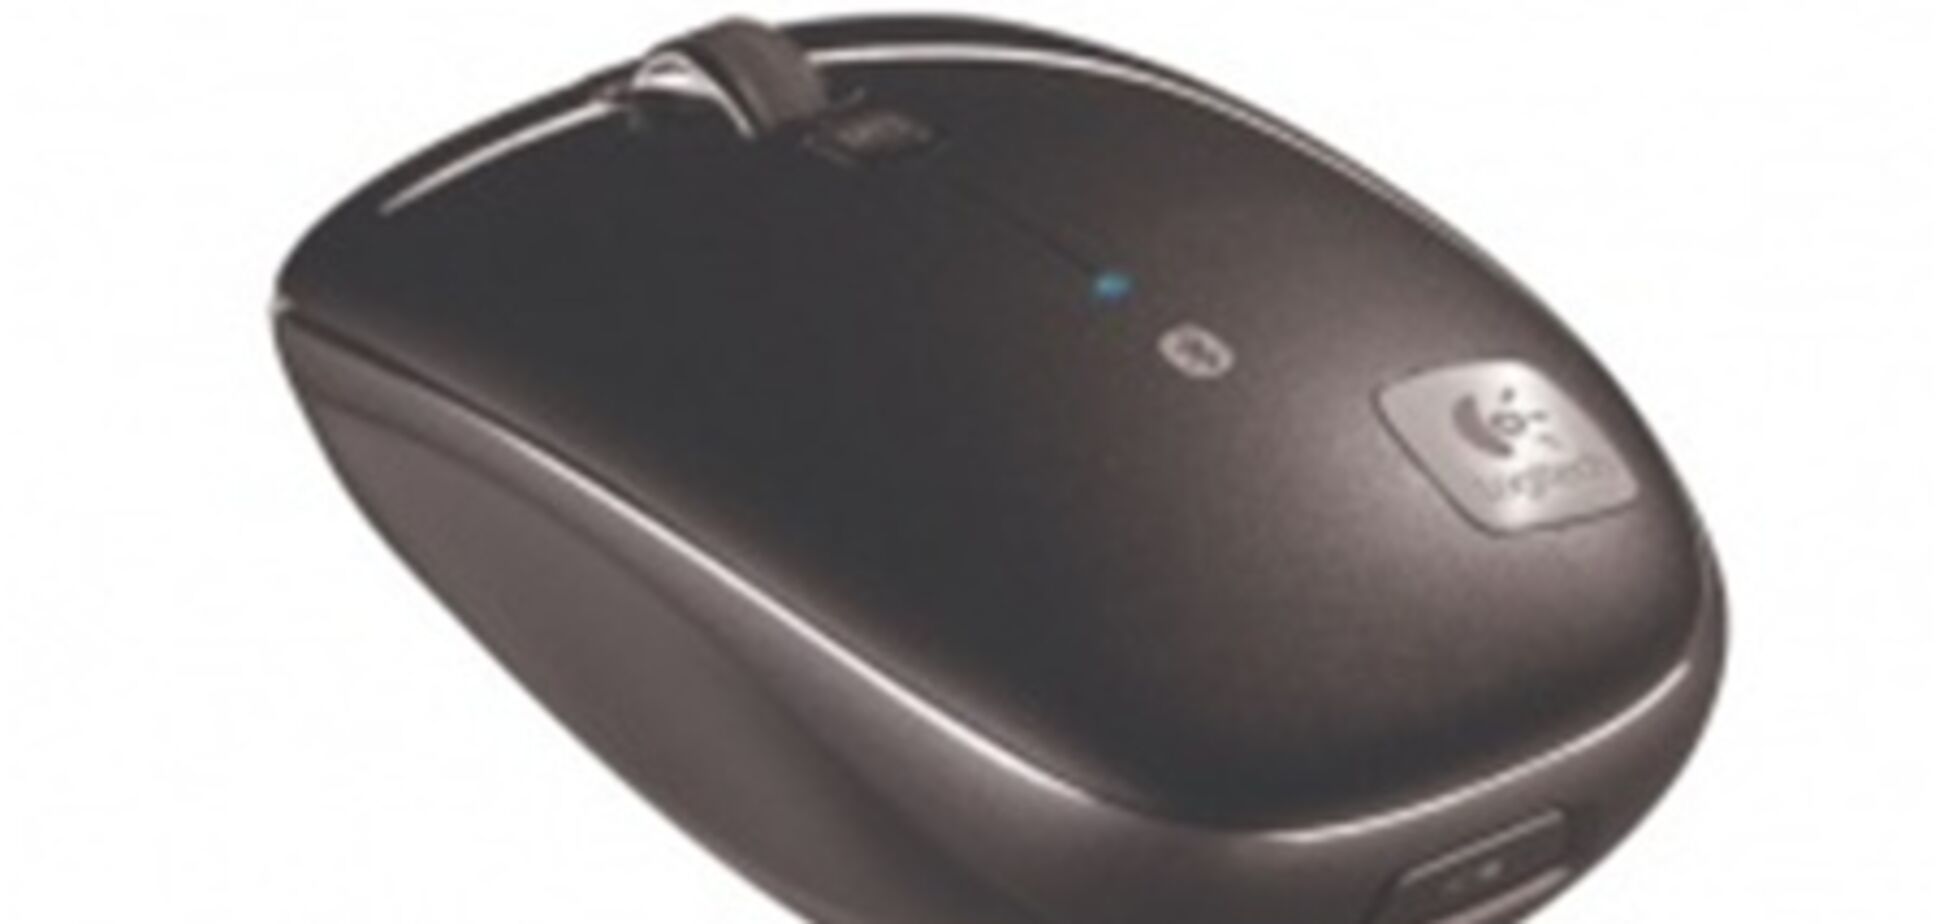 Logitech покажет Bluetooth-мышь с высокоскоростным колесиком прокрутки